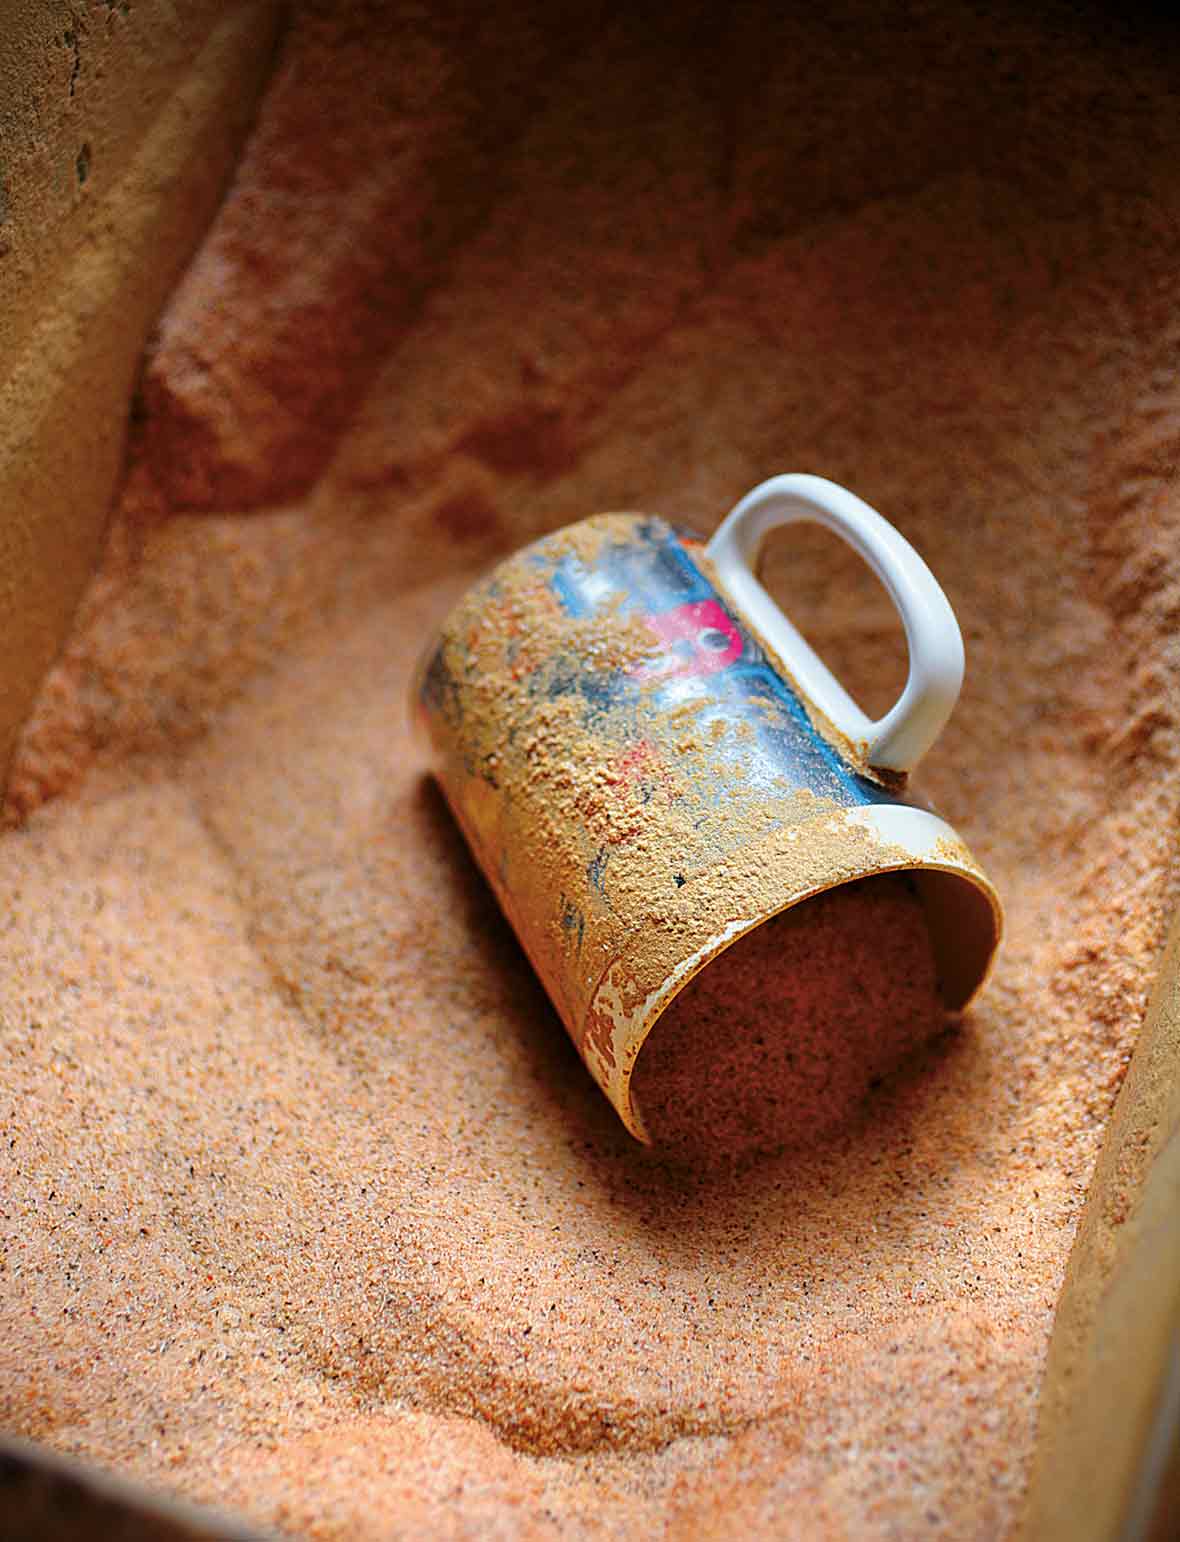 En mugg som ligger på sidan i en behållare med cajun kryddblandning